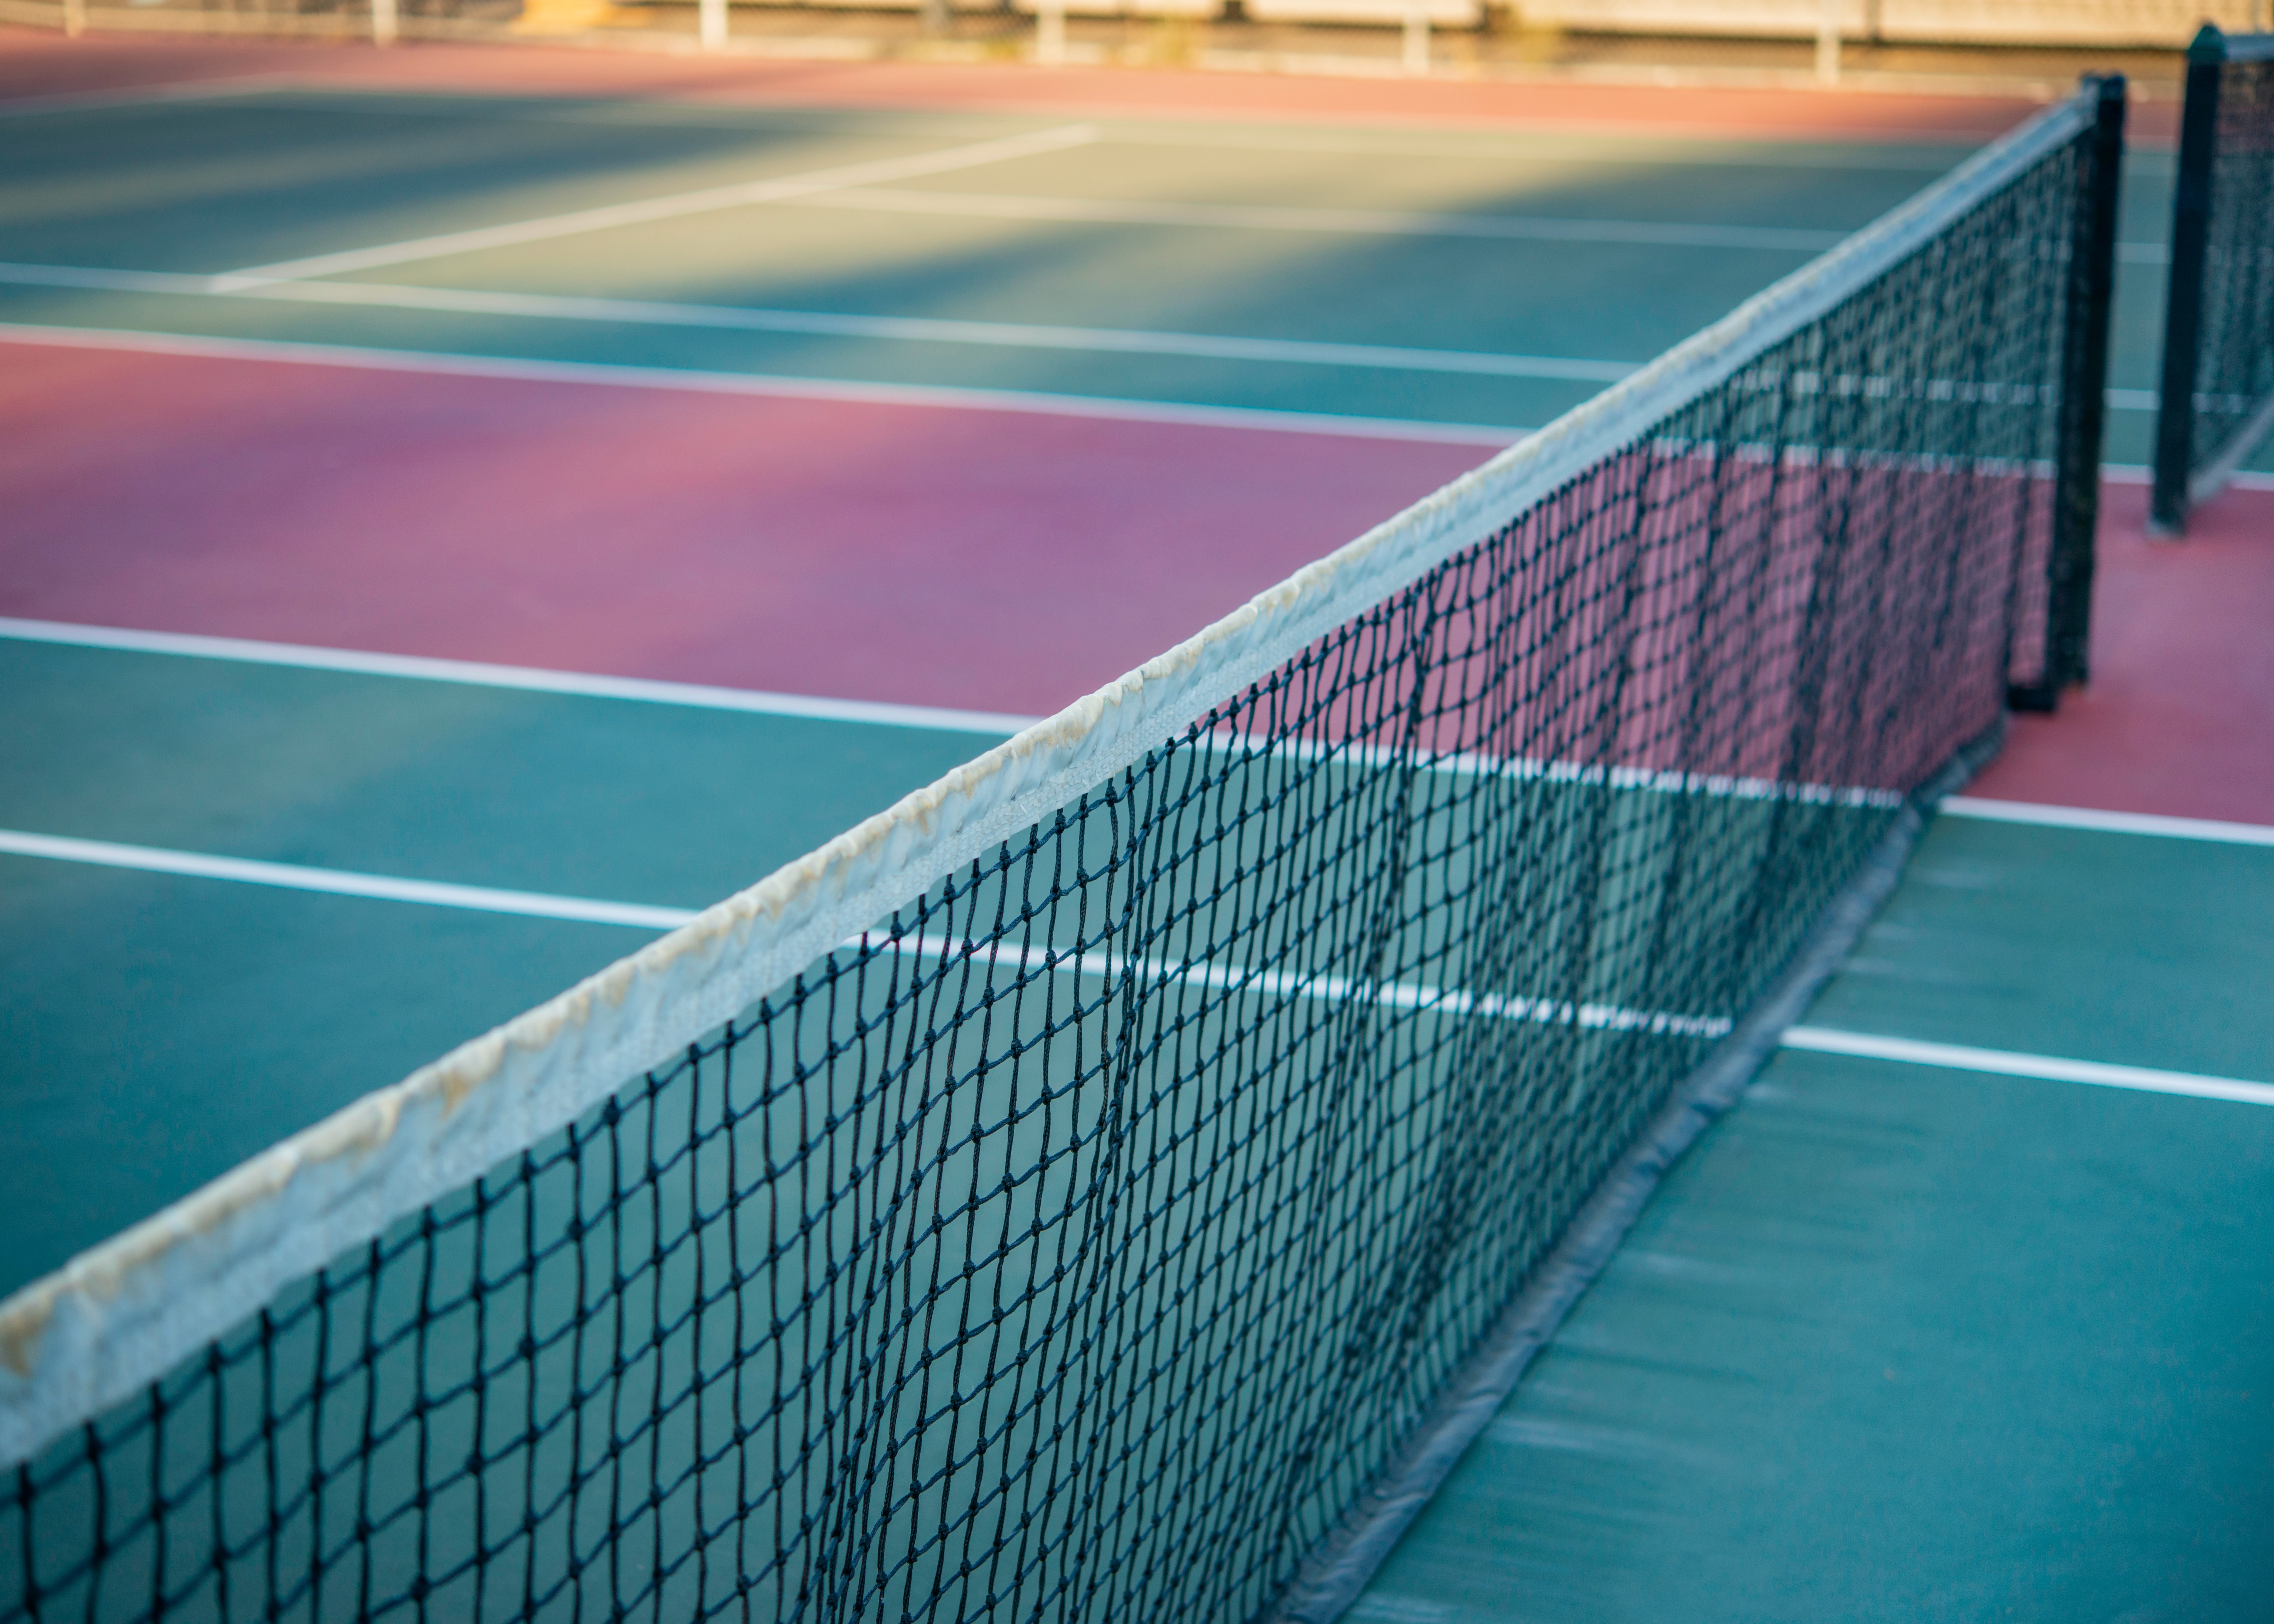 Tennis Net on a court